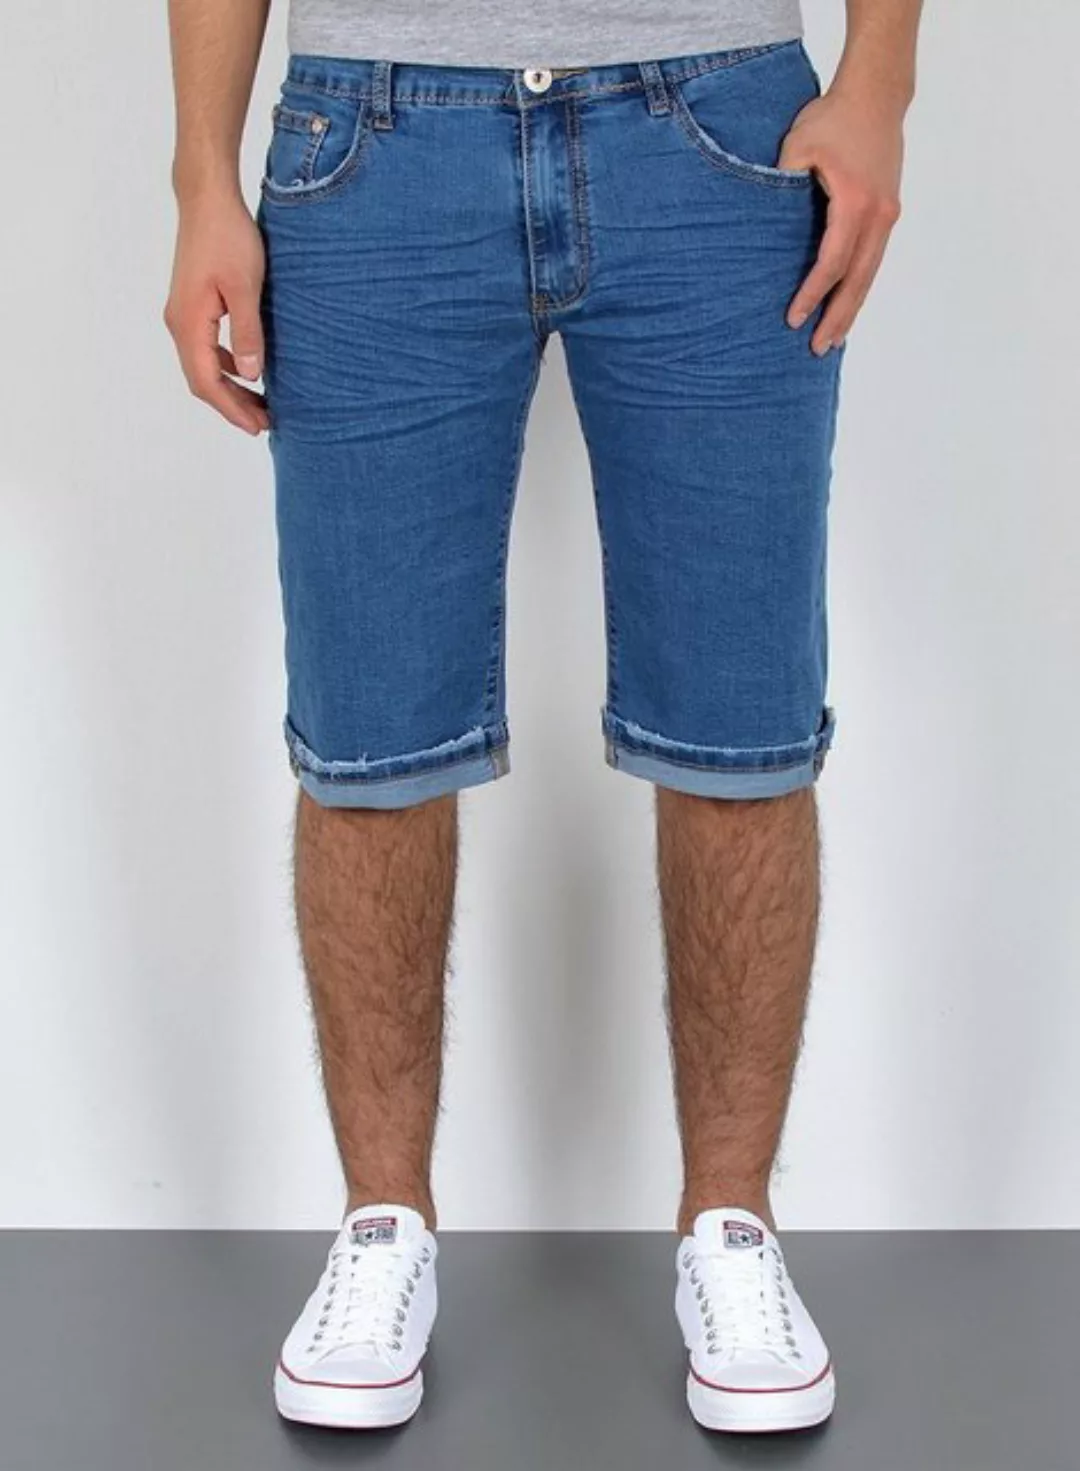 ESRA Jeansshorts A373 Herren Jeans Shorts Hose, bis Übergröße / Plussize Gr günstig online kaufen